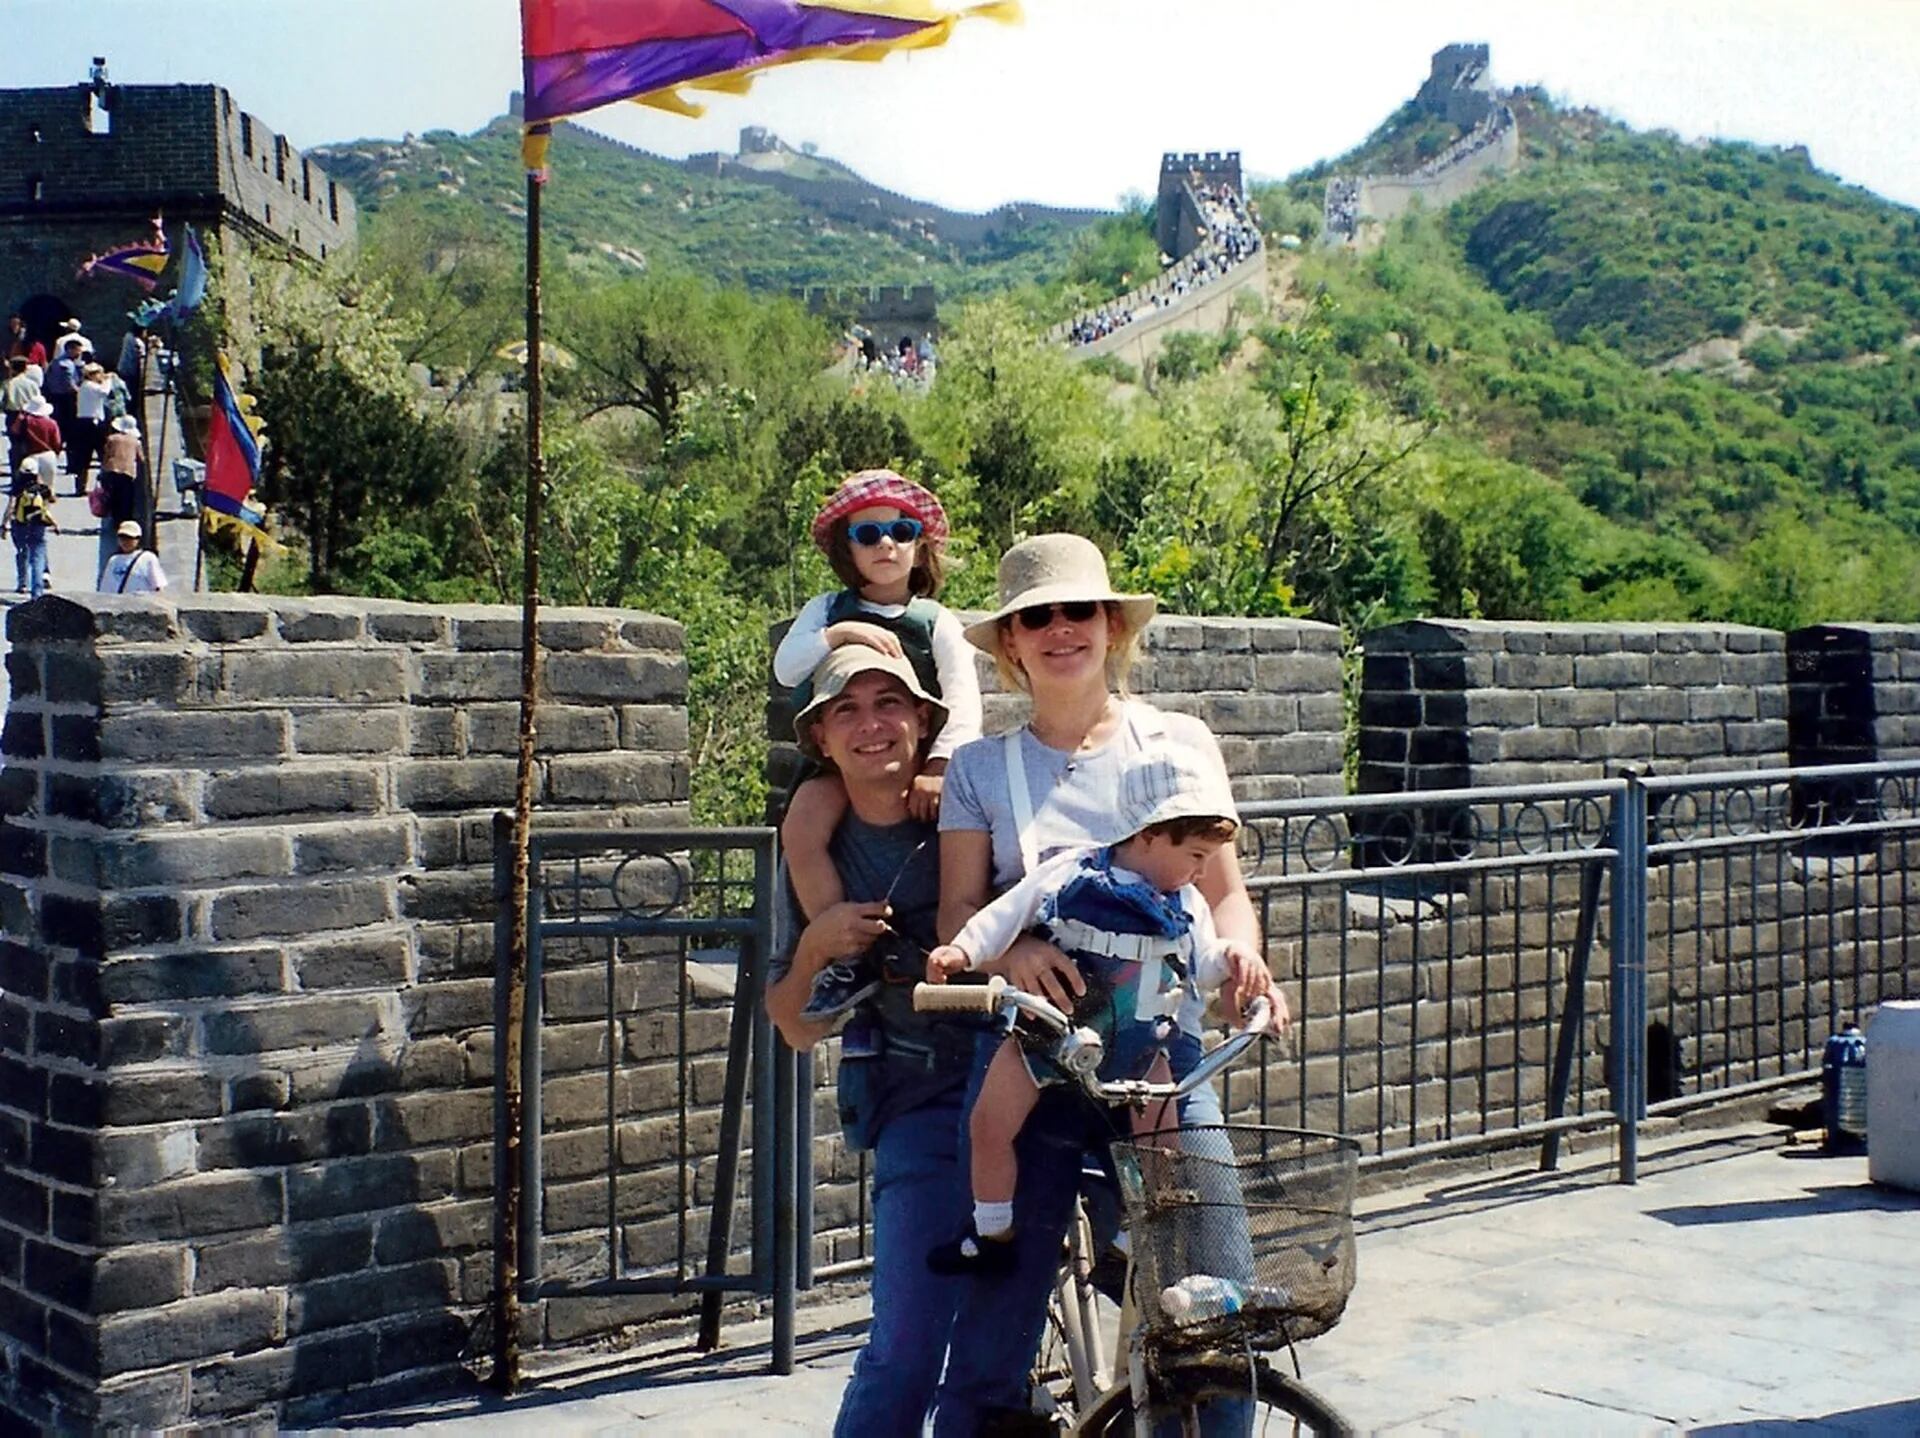 La muralla china en bicicleta, uno de los viajes memorables que realizaron en 1999 con sus dos primeras hijas